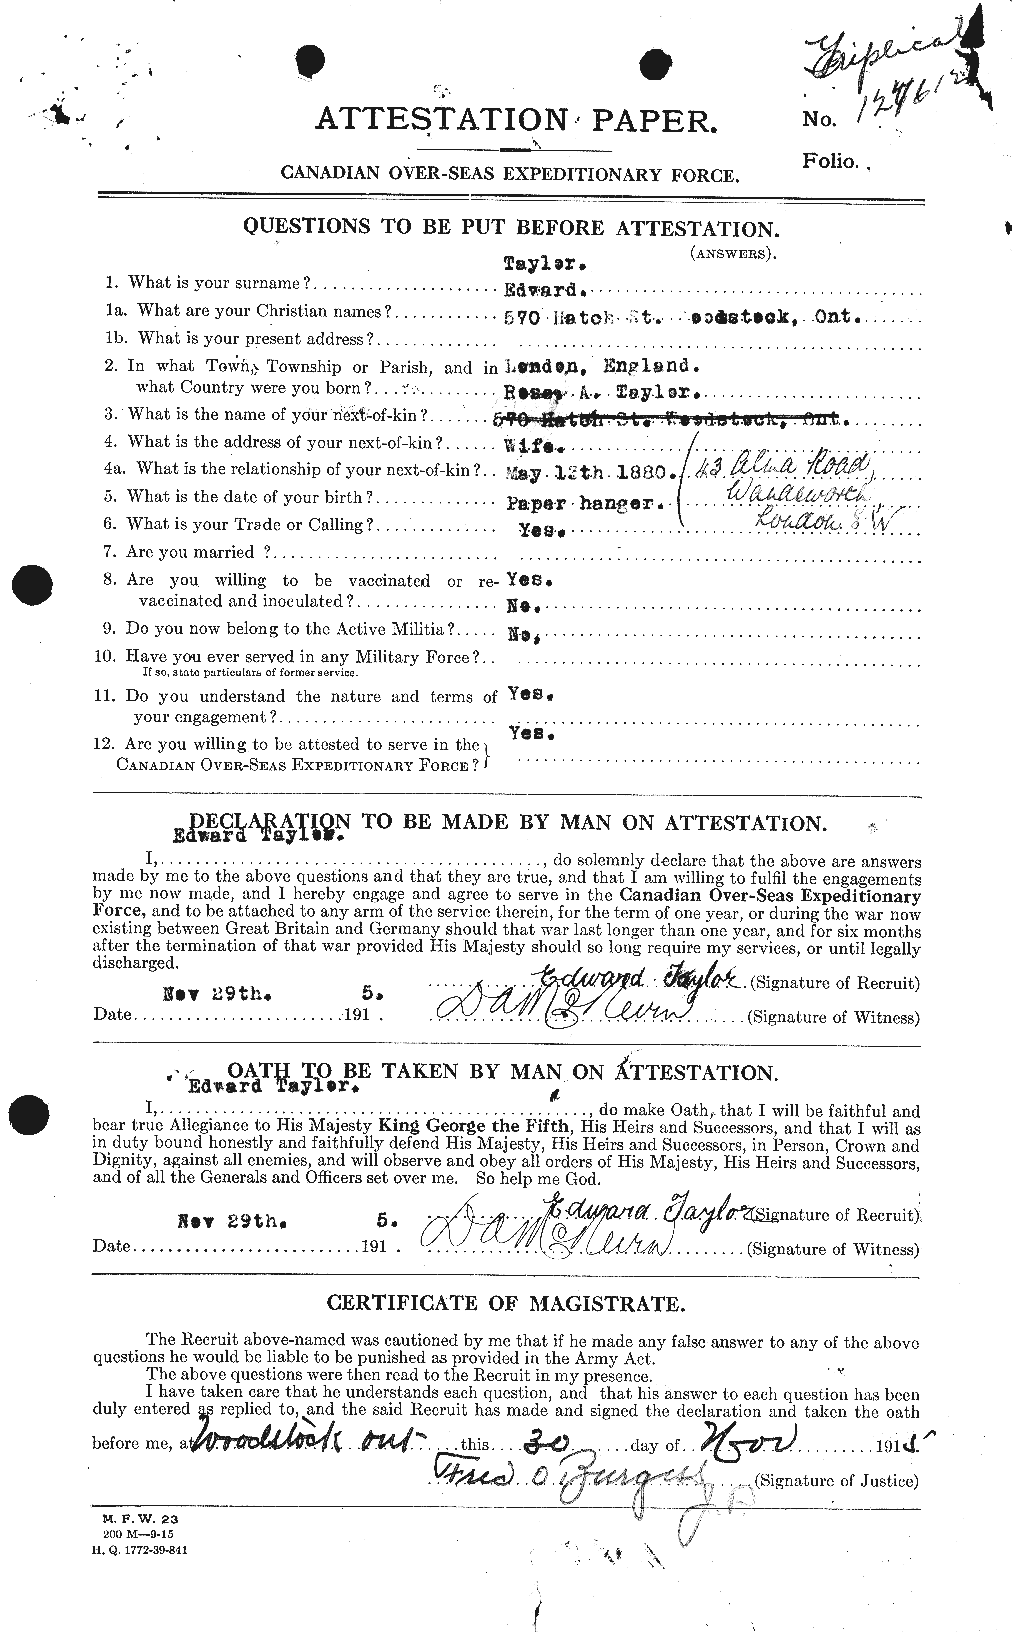 Dossiers du Personnel de la Première Guerre mondiale - CEC 627286a